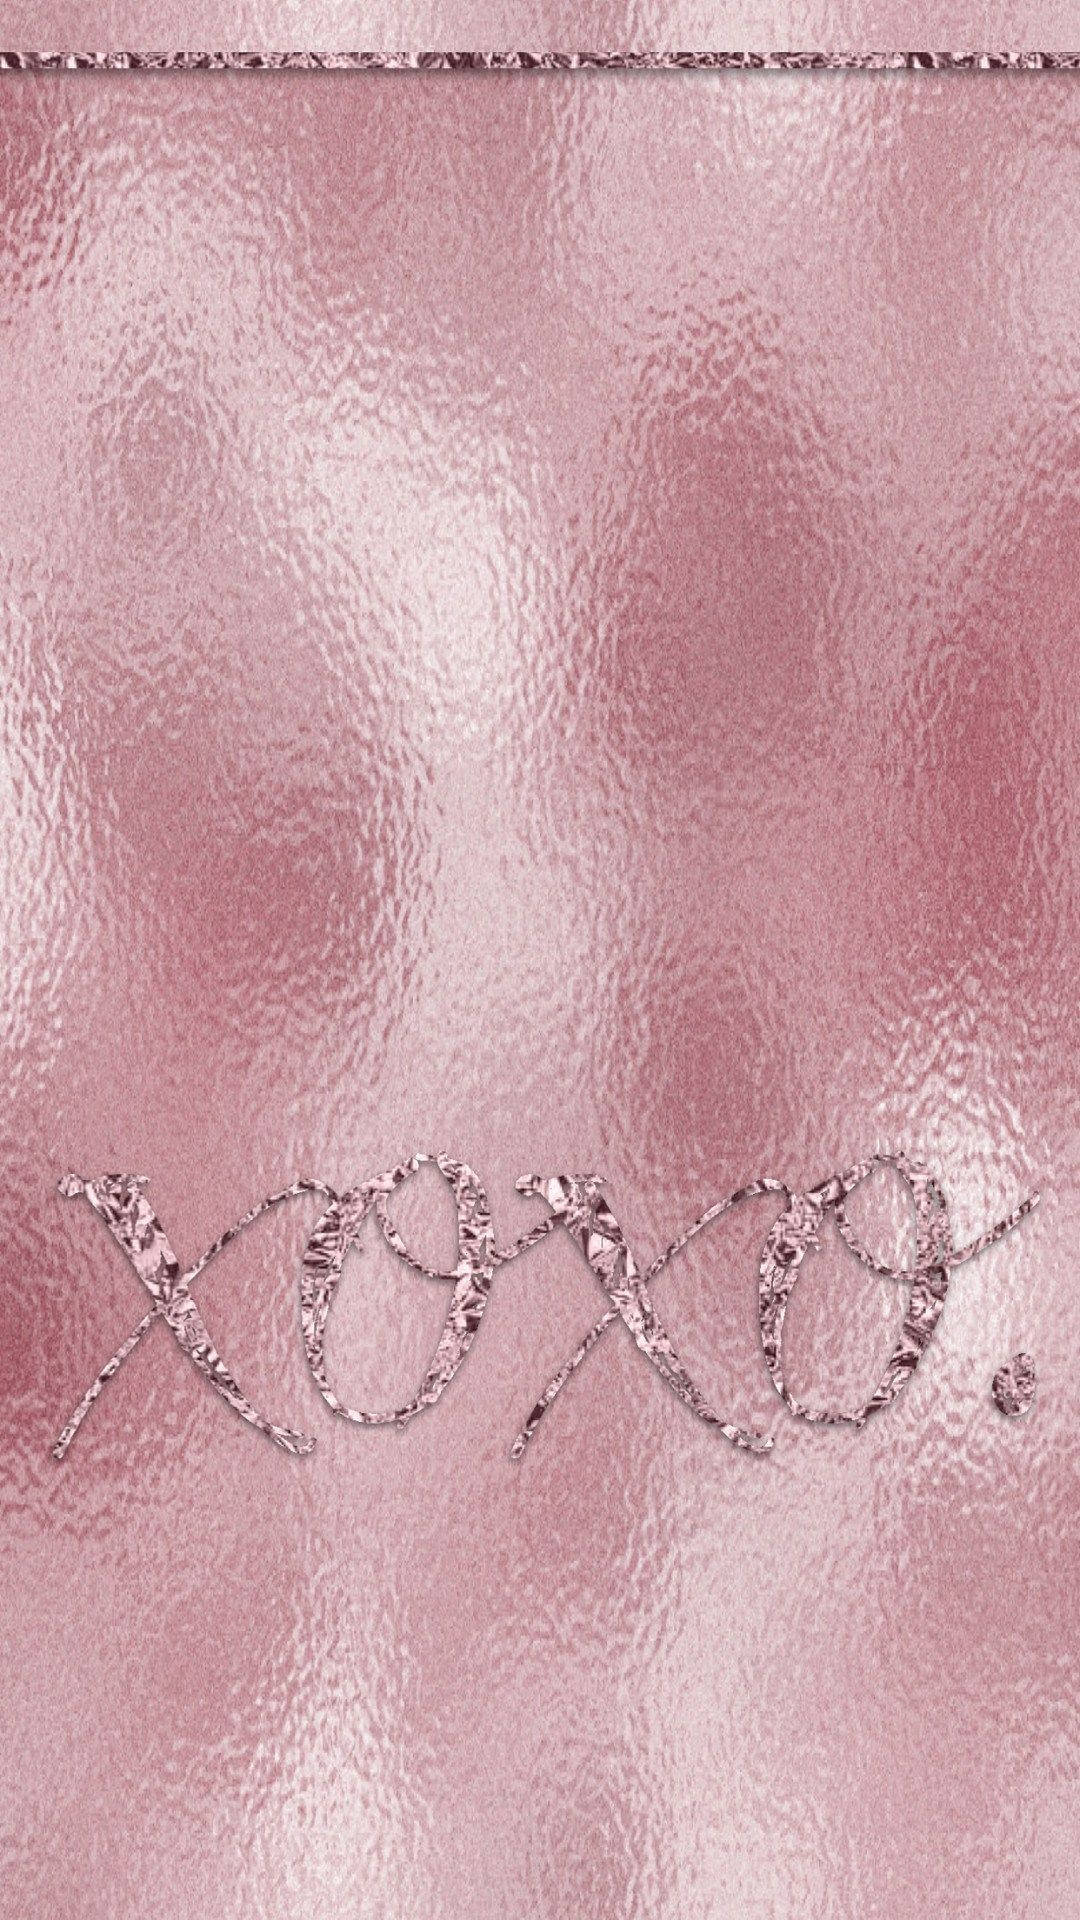 Rose Gold Aesthetic Xoxo Background